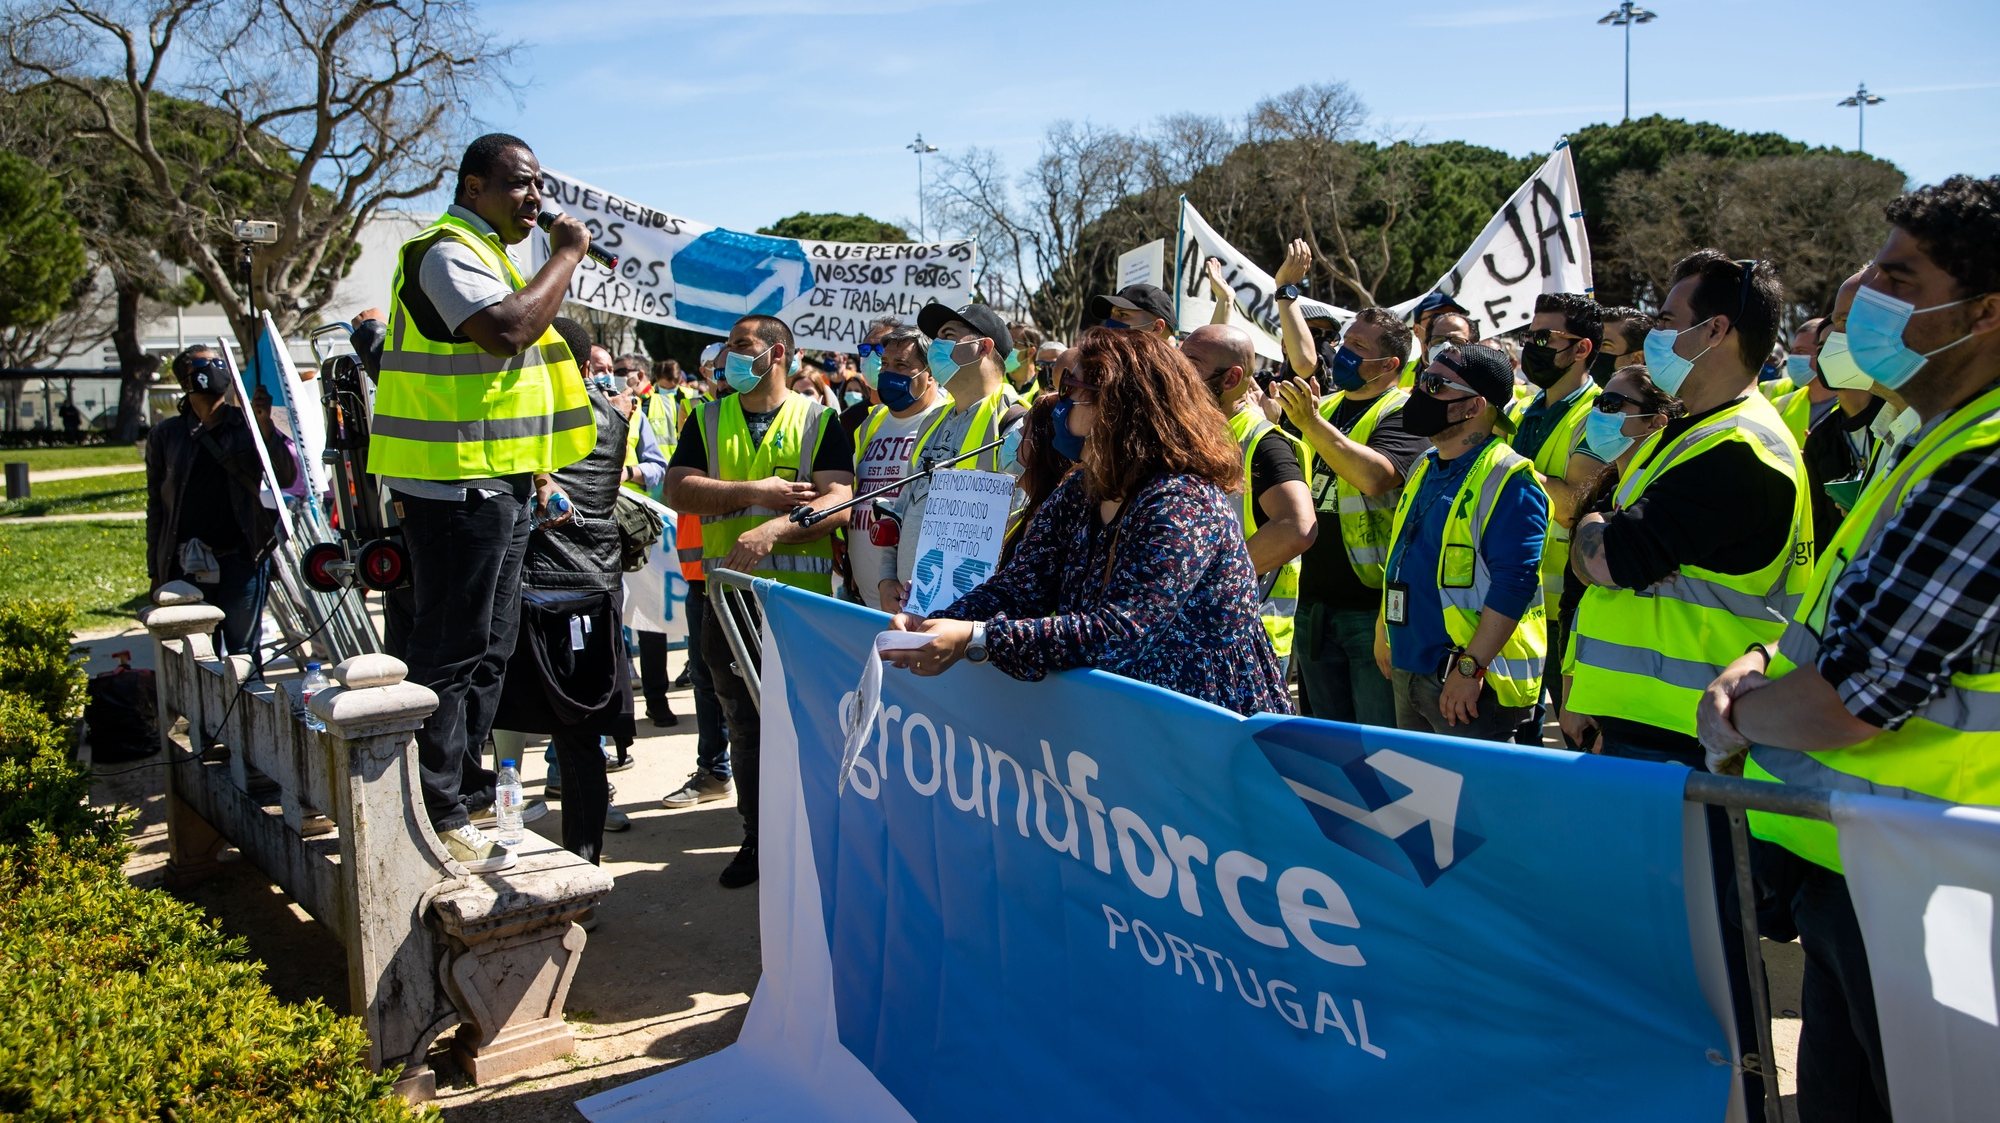 Manifestação de trabalhadores da SPdH/Groundforce convocada pelo movimento SOS handling, em protesto pelo não pagamento de salários e os despedimentos anunciados, em frente ao Palácio de Belém, em Lisboa, 15 de  março de 2021. JOSÉ SENA GOULÃO/LUSA